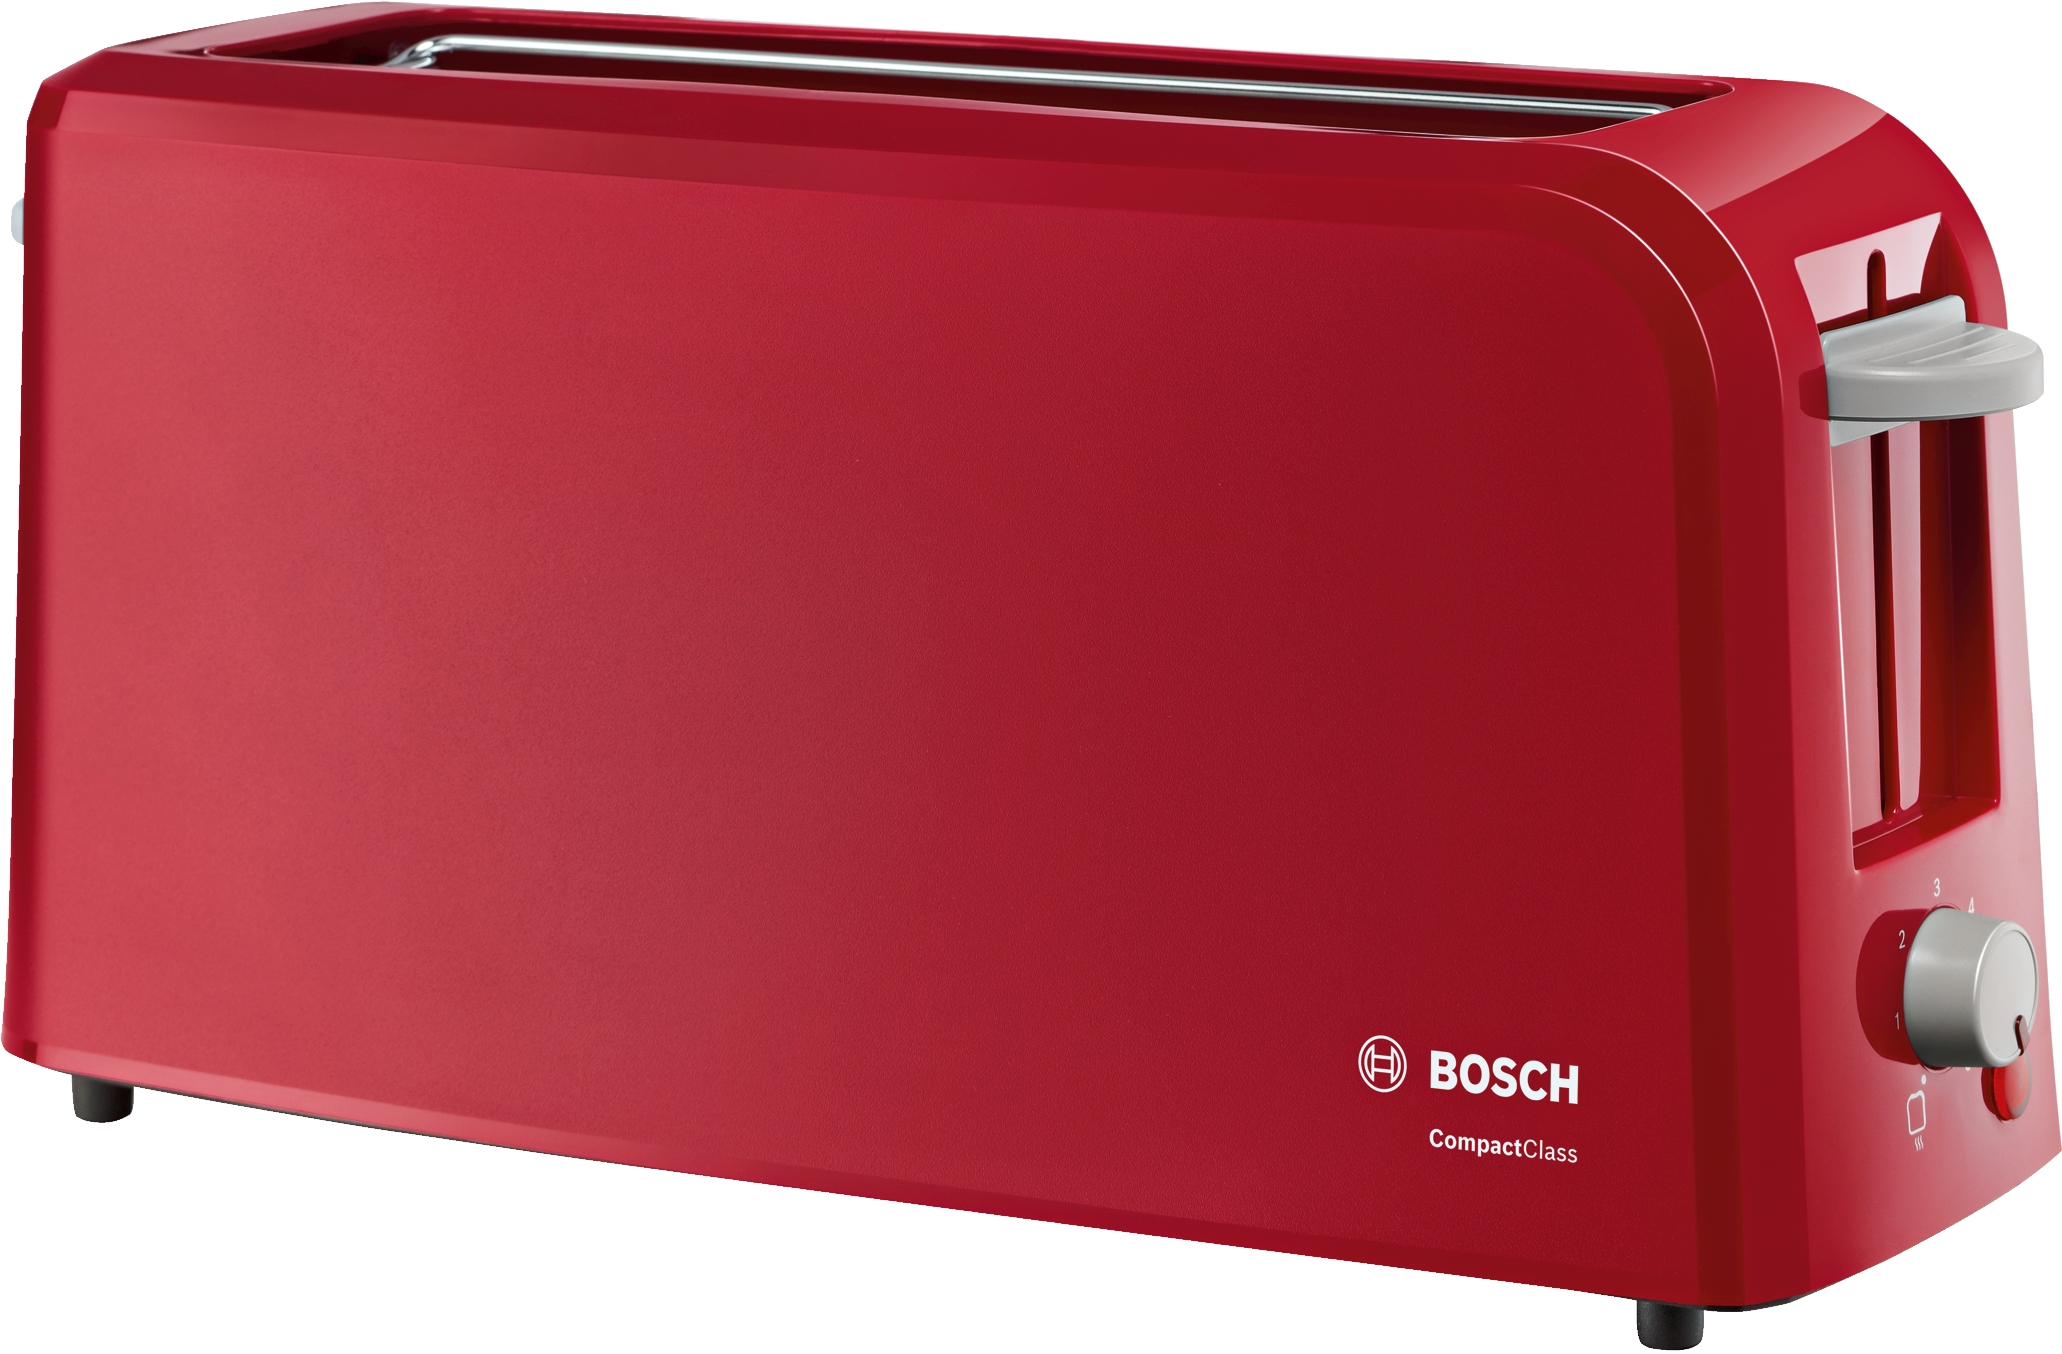 TAT3A004 Prăjitor pâine long slot Compact Class Red Bosch, 980W, Roşu